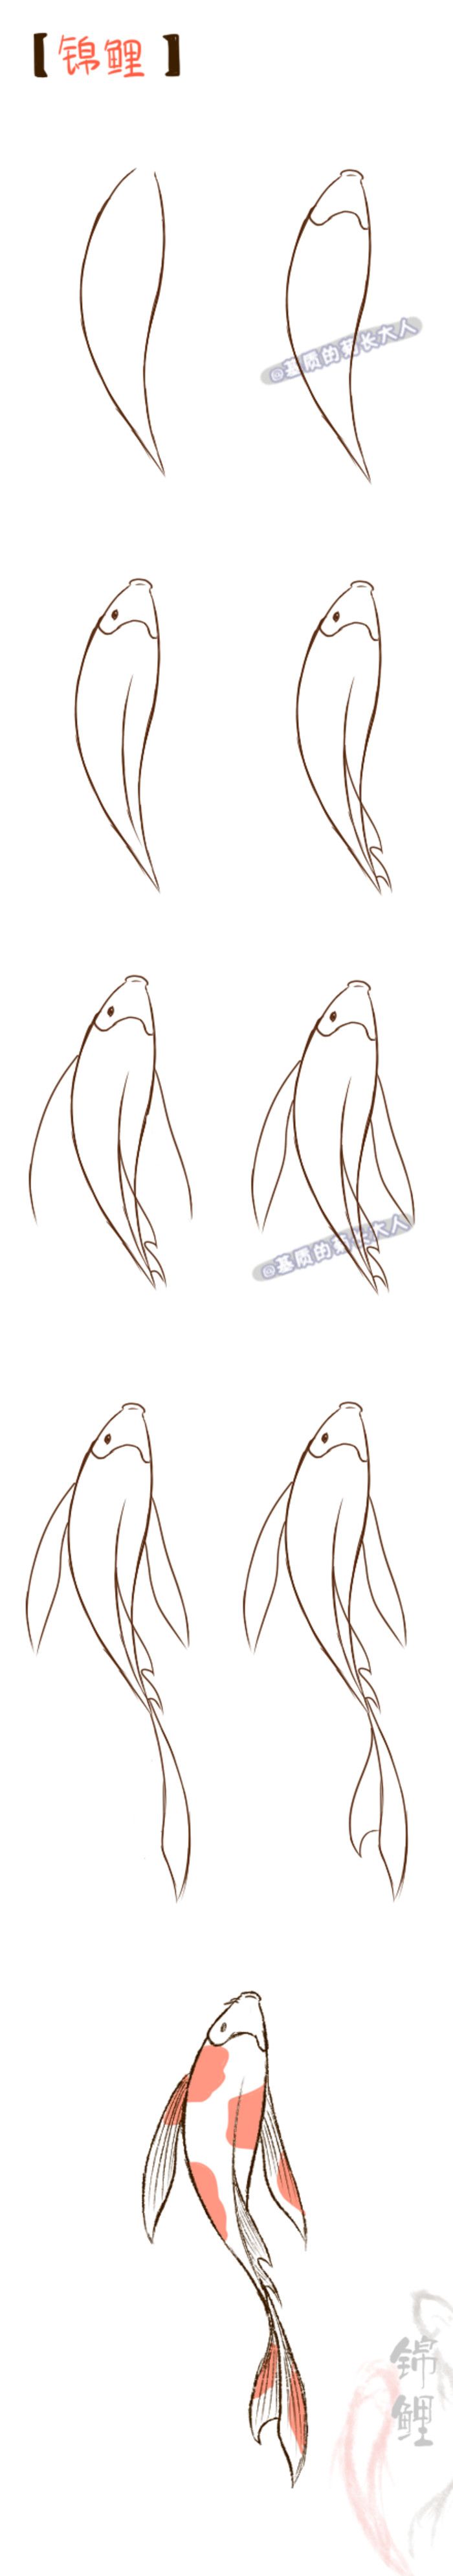 koi fish drawings